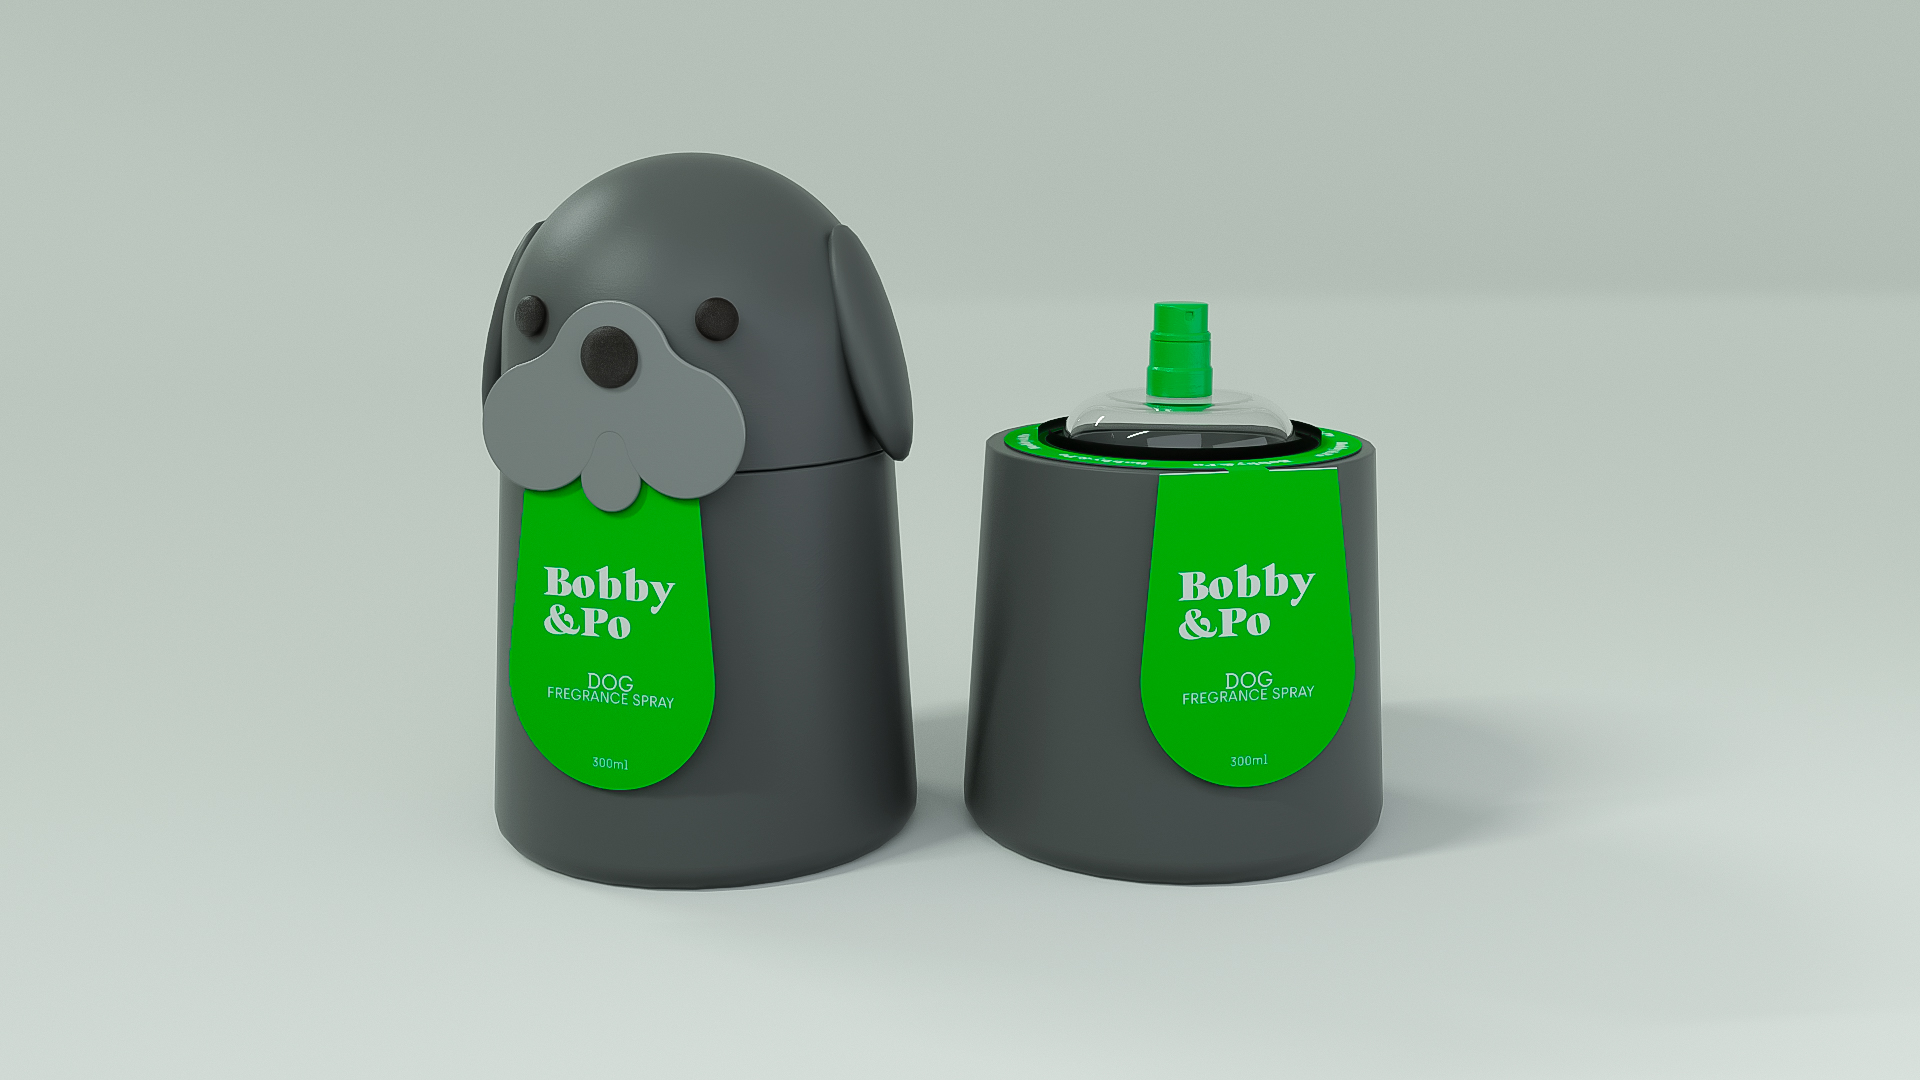 Bobby&Po Dog Perfume Packaging Design